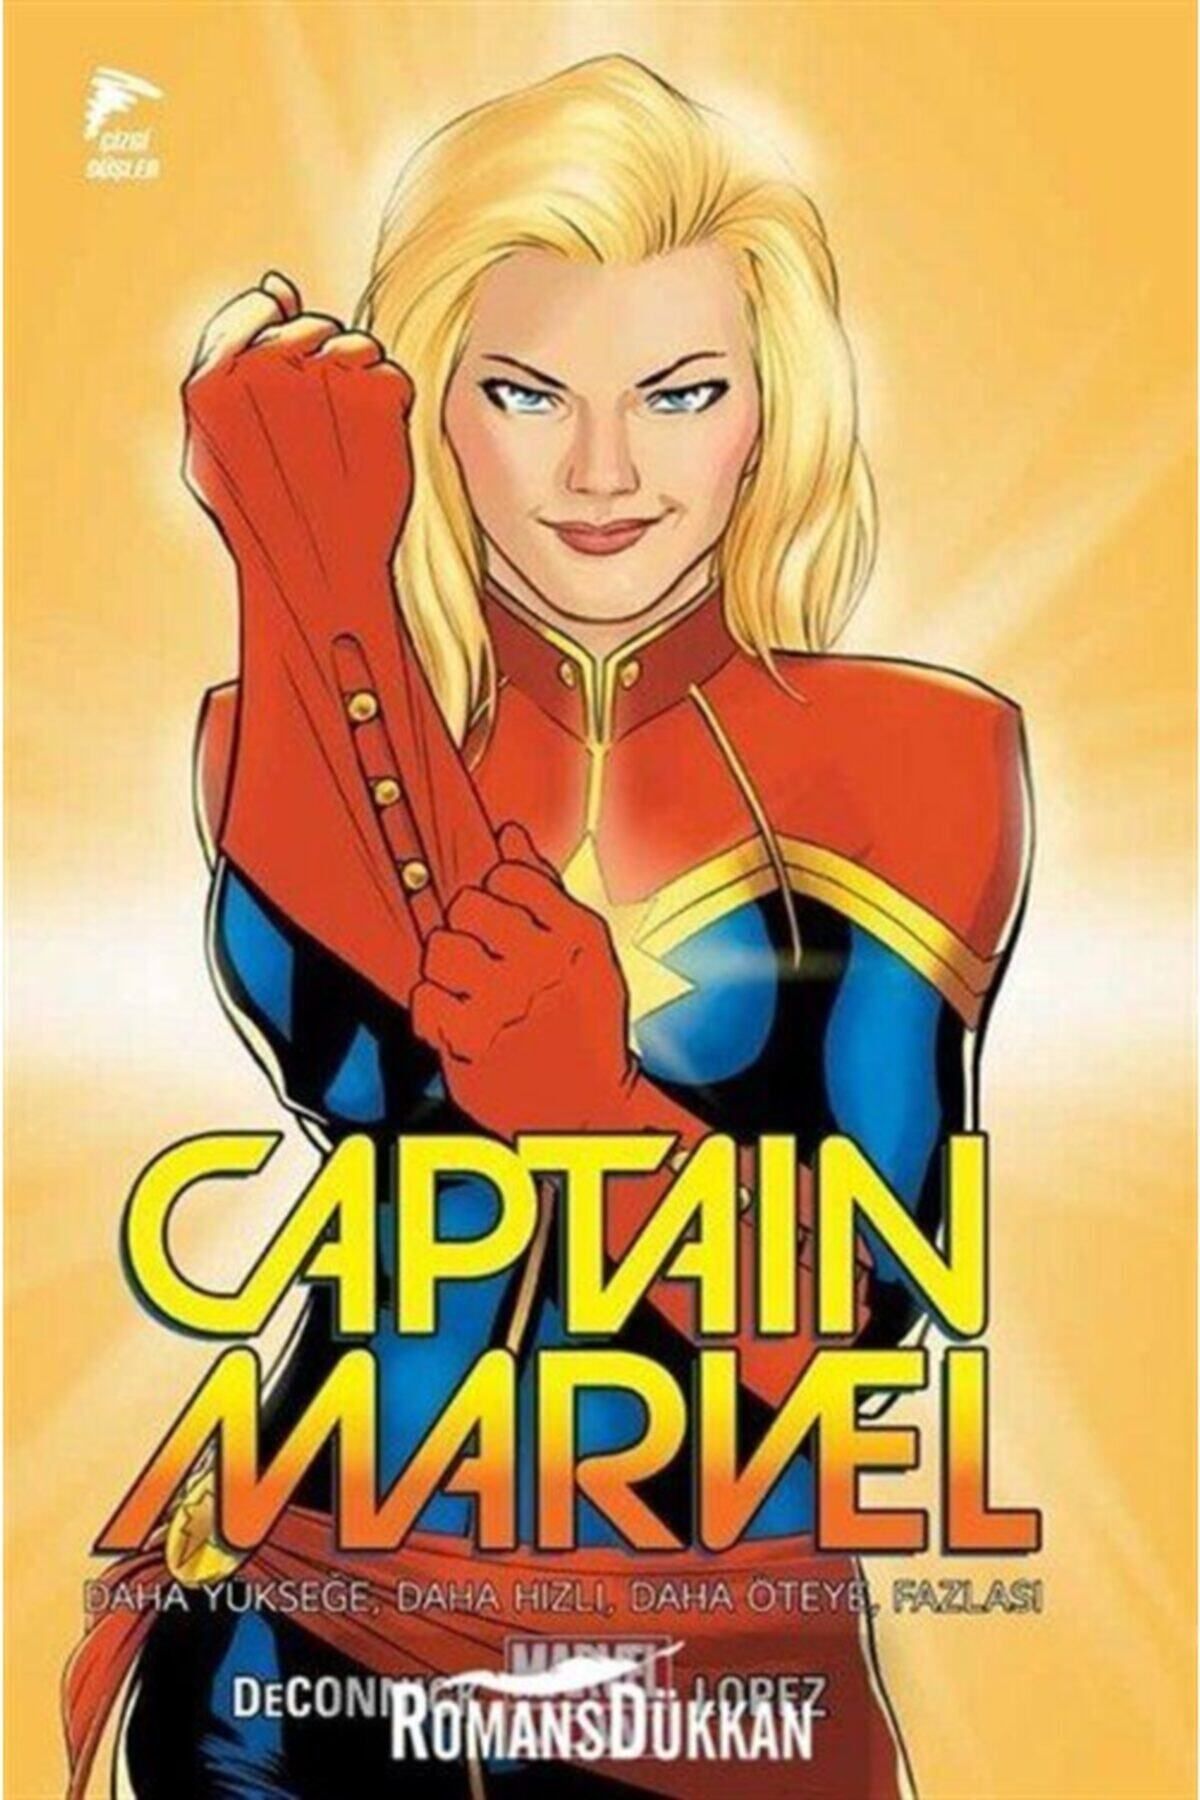 Genel Markalar Captain Marvel Cilt 1 Daha Yükseğe Daha Hızı Daha Öteye Fazlası